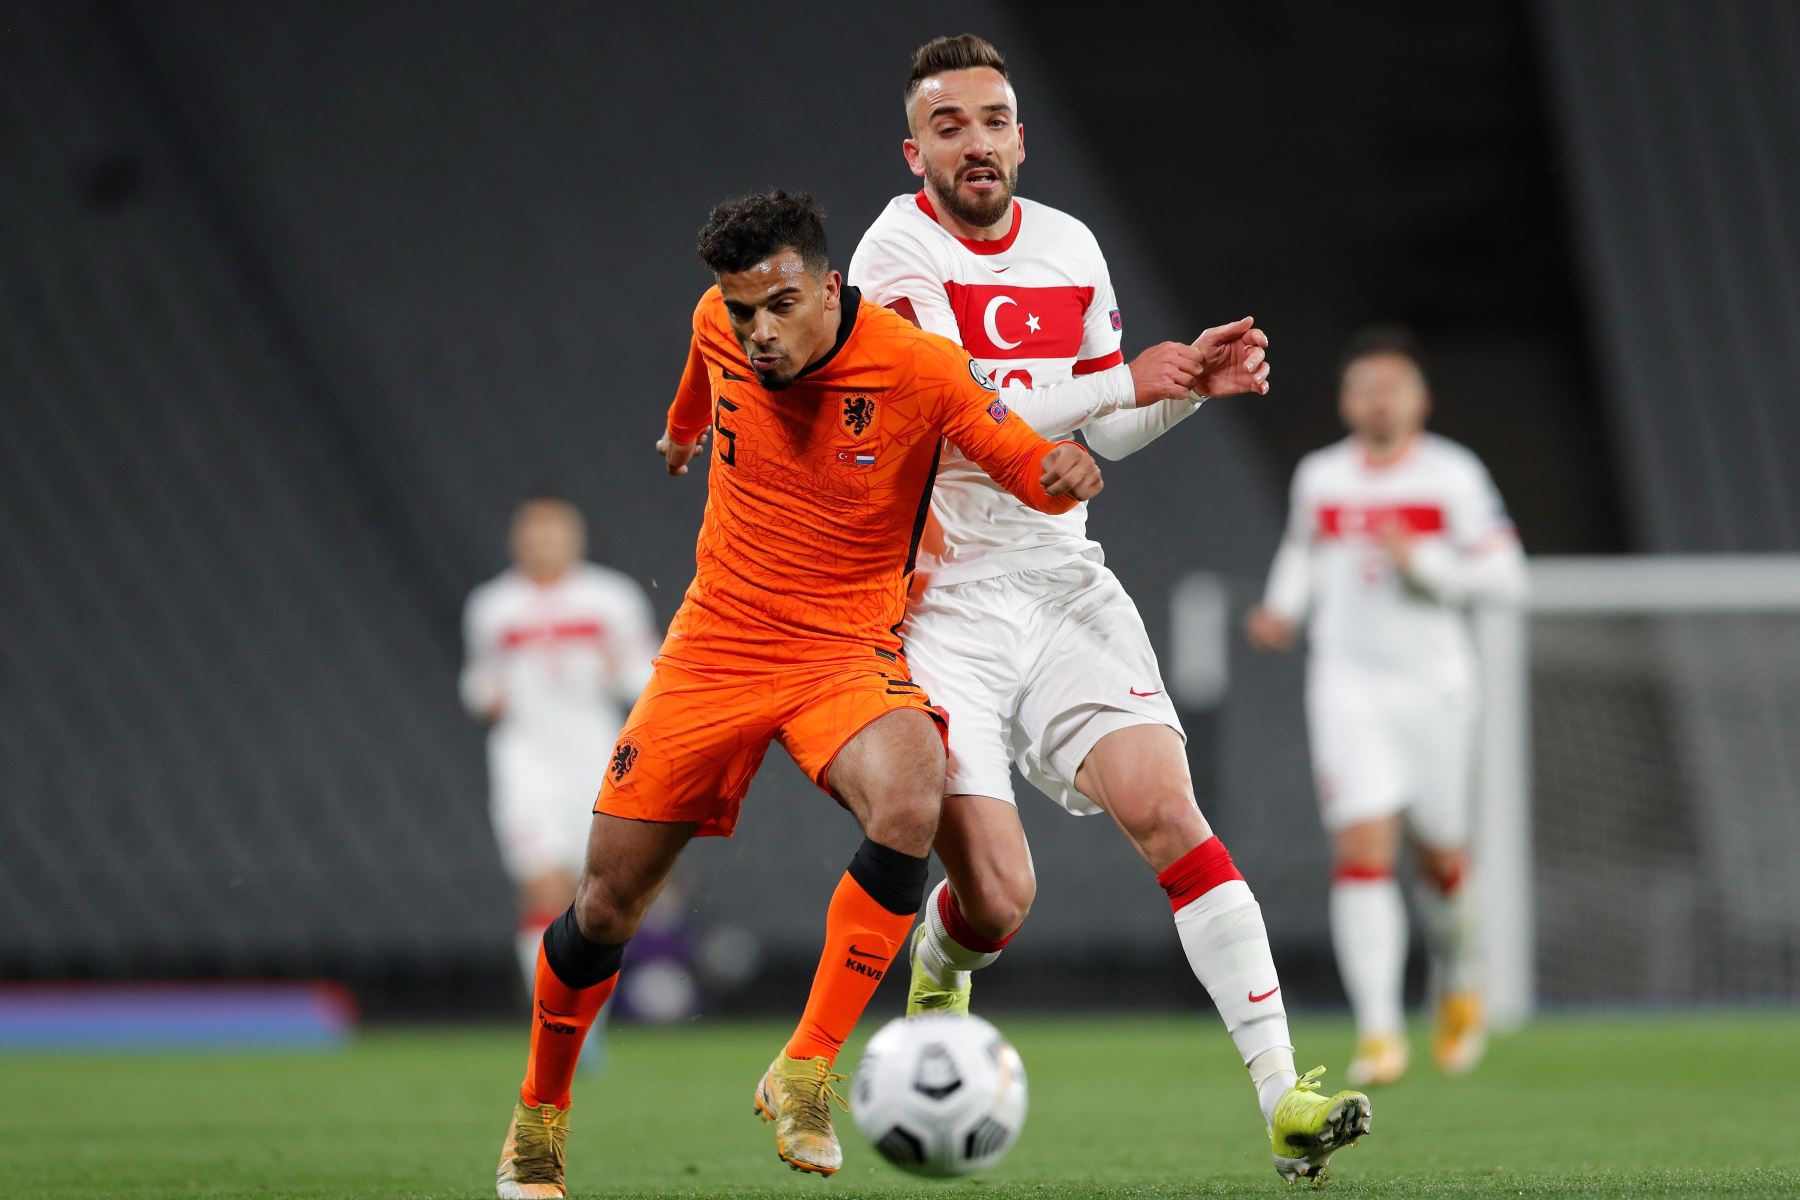 Owen Wijndal de Holanda en acción contra Kenan Karaman de Turquía durante el partido de clasificación para la Copa Mundial de la FIFA 2022. Foto: EFE